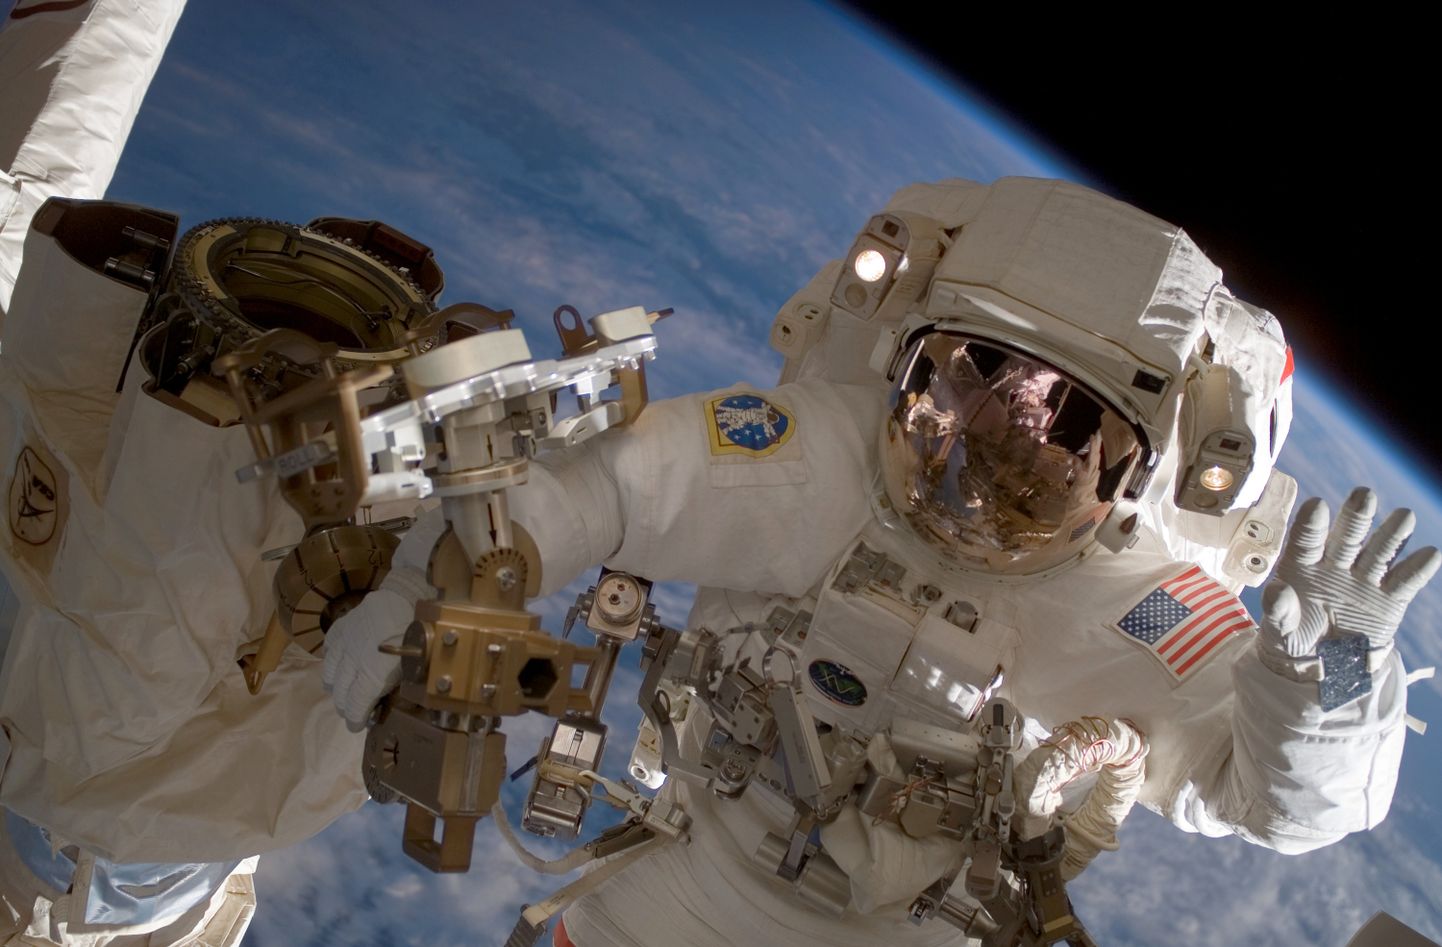 NASA astronauts atklātā kosmosā.